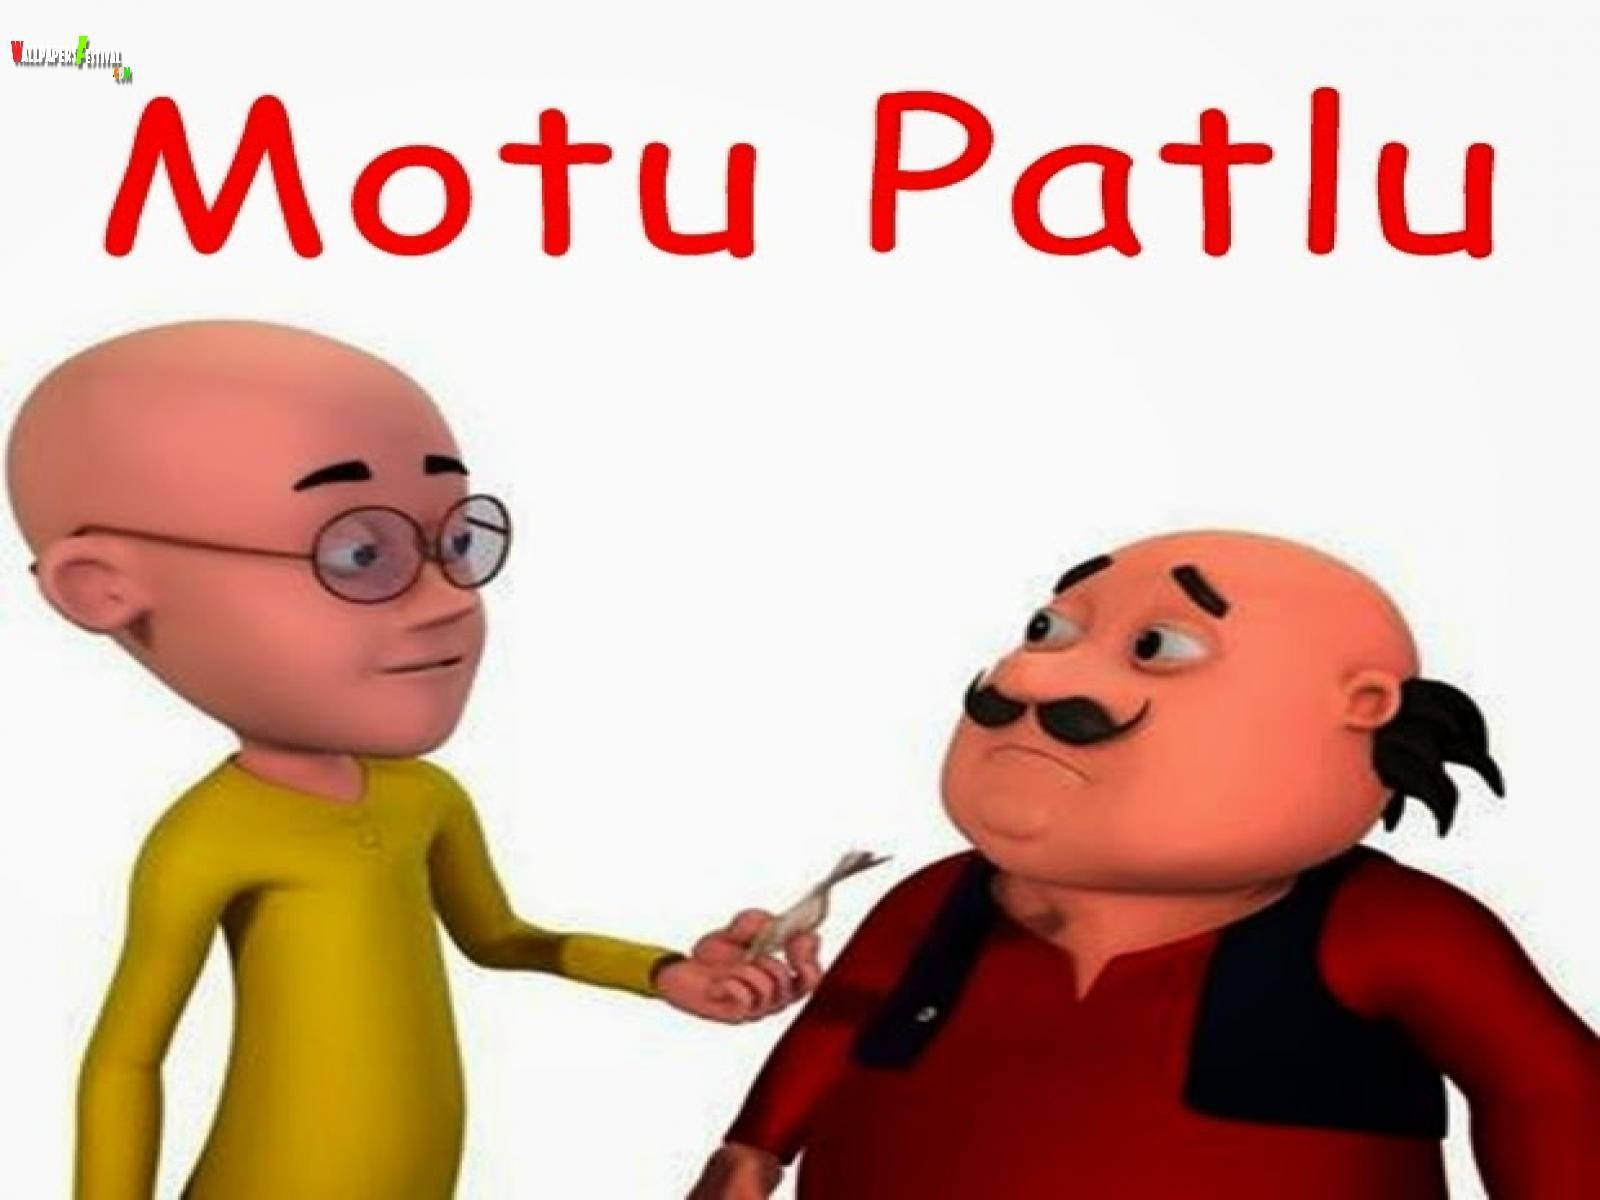 Motupatlu Simple Translates To 